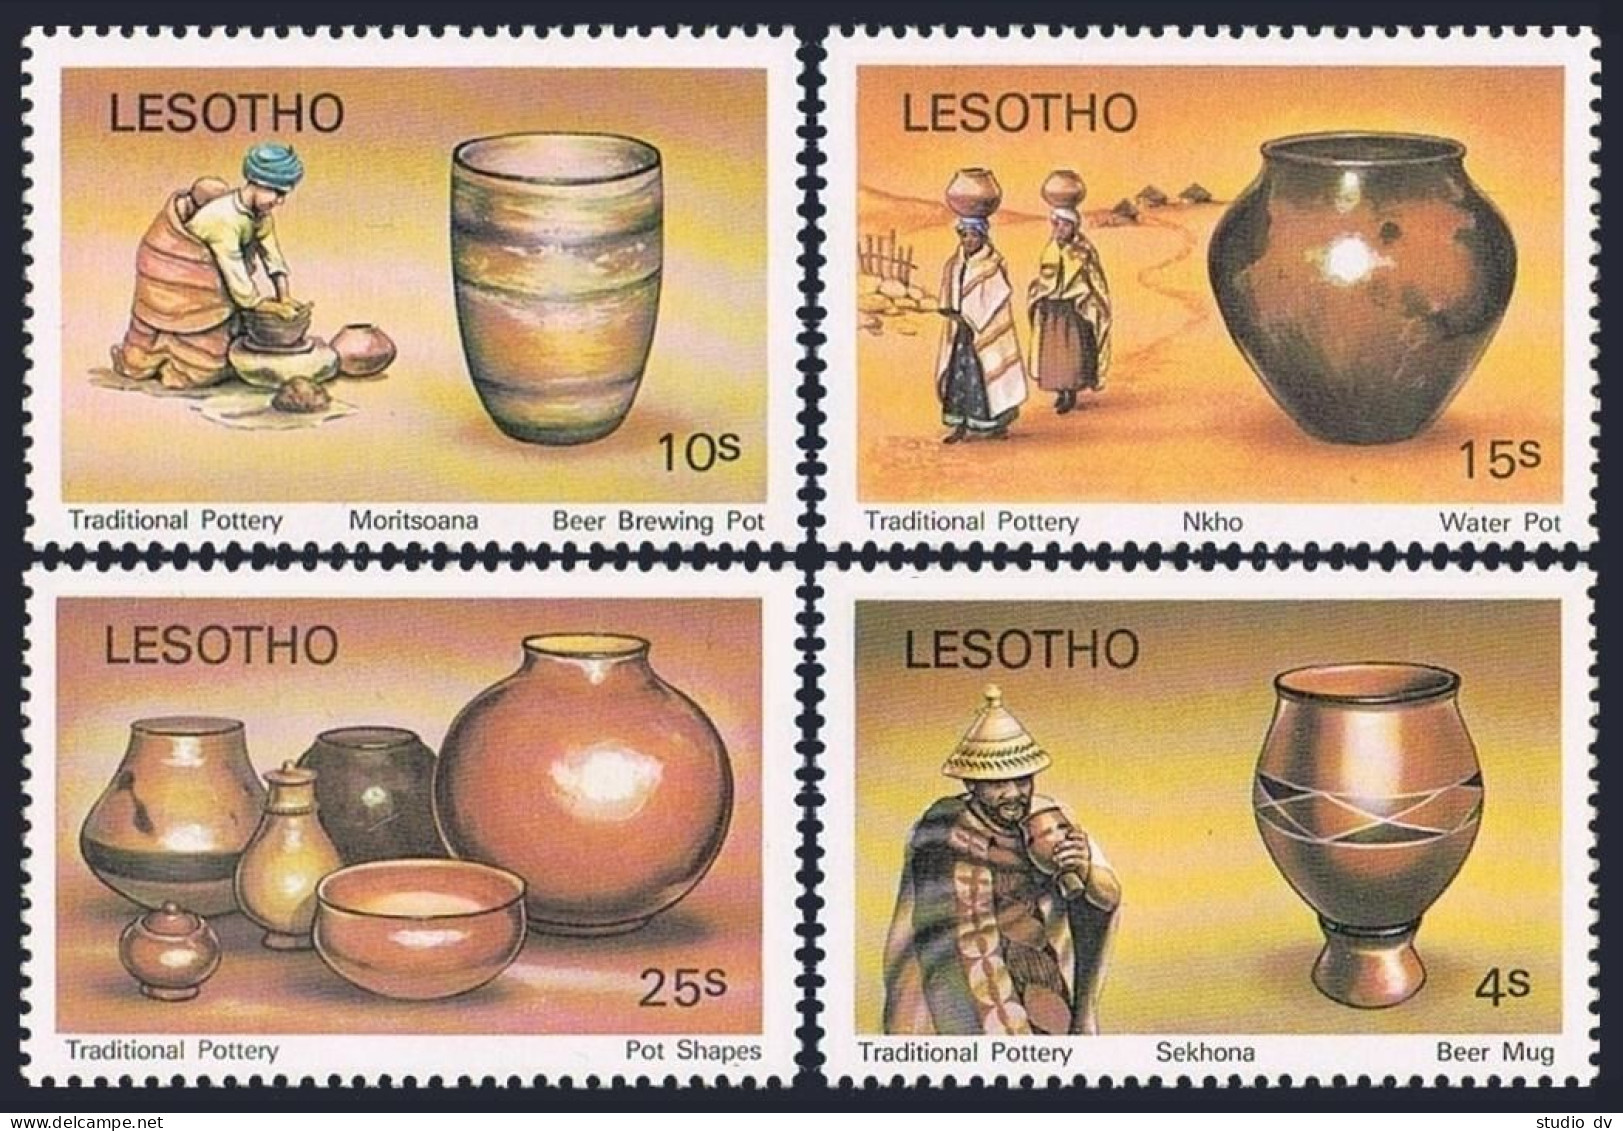 Lesotho 297-300,301 Ad Sheet, MNH. Traditional Pottery, 1980. Josiah Wedgwood. - Lesotho (1966-...)